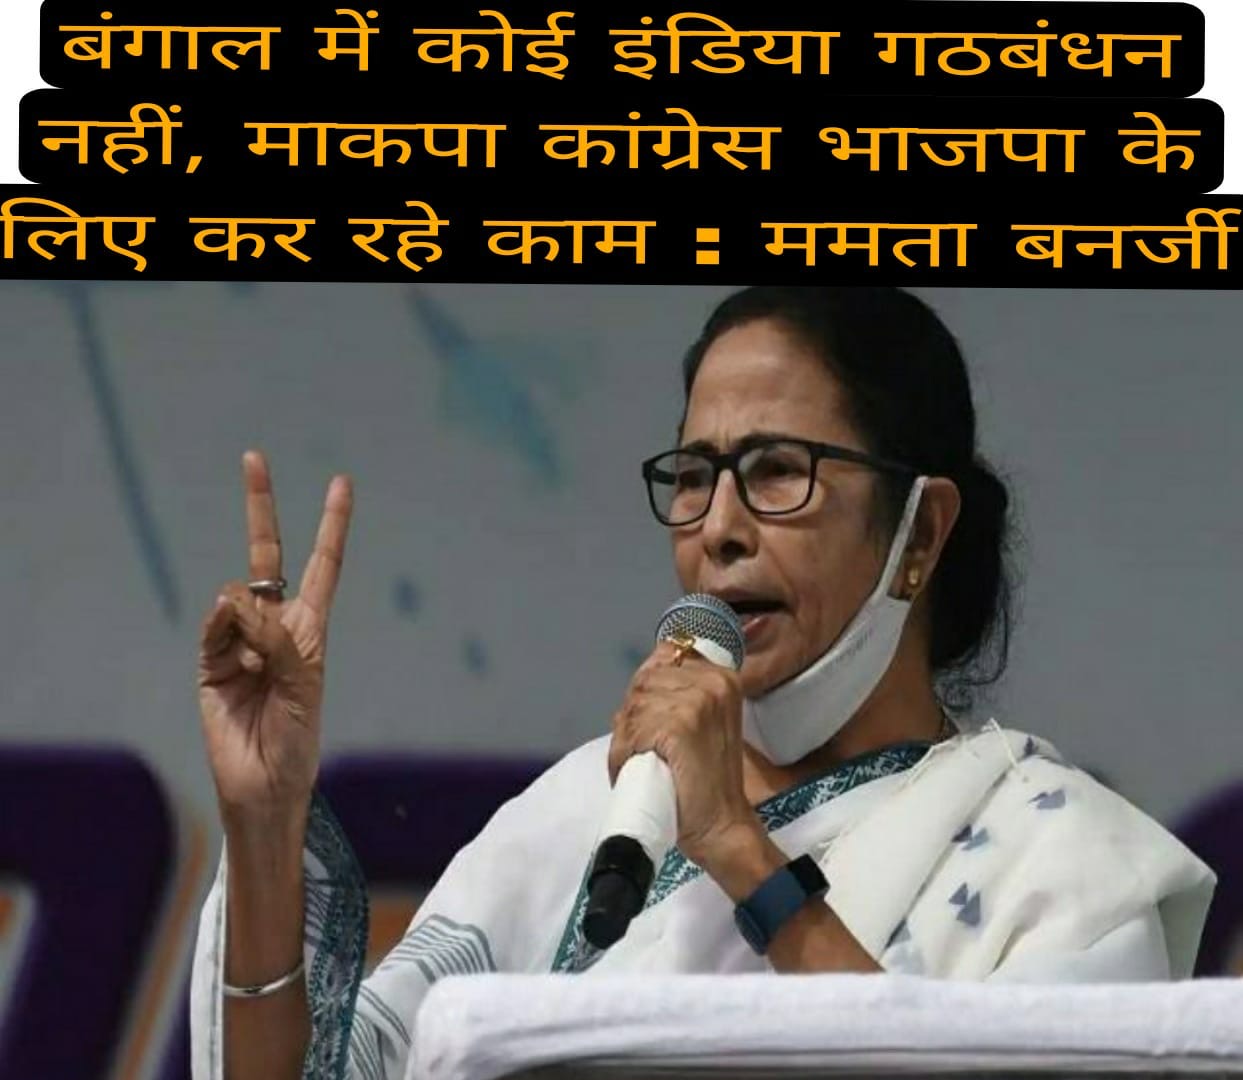 बंगाल में कोई इंडिया गठबंधन नहीं, माकपा-कांग्रेस भाजपा के लिए कर रहे काम : ममता बनर्जी 